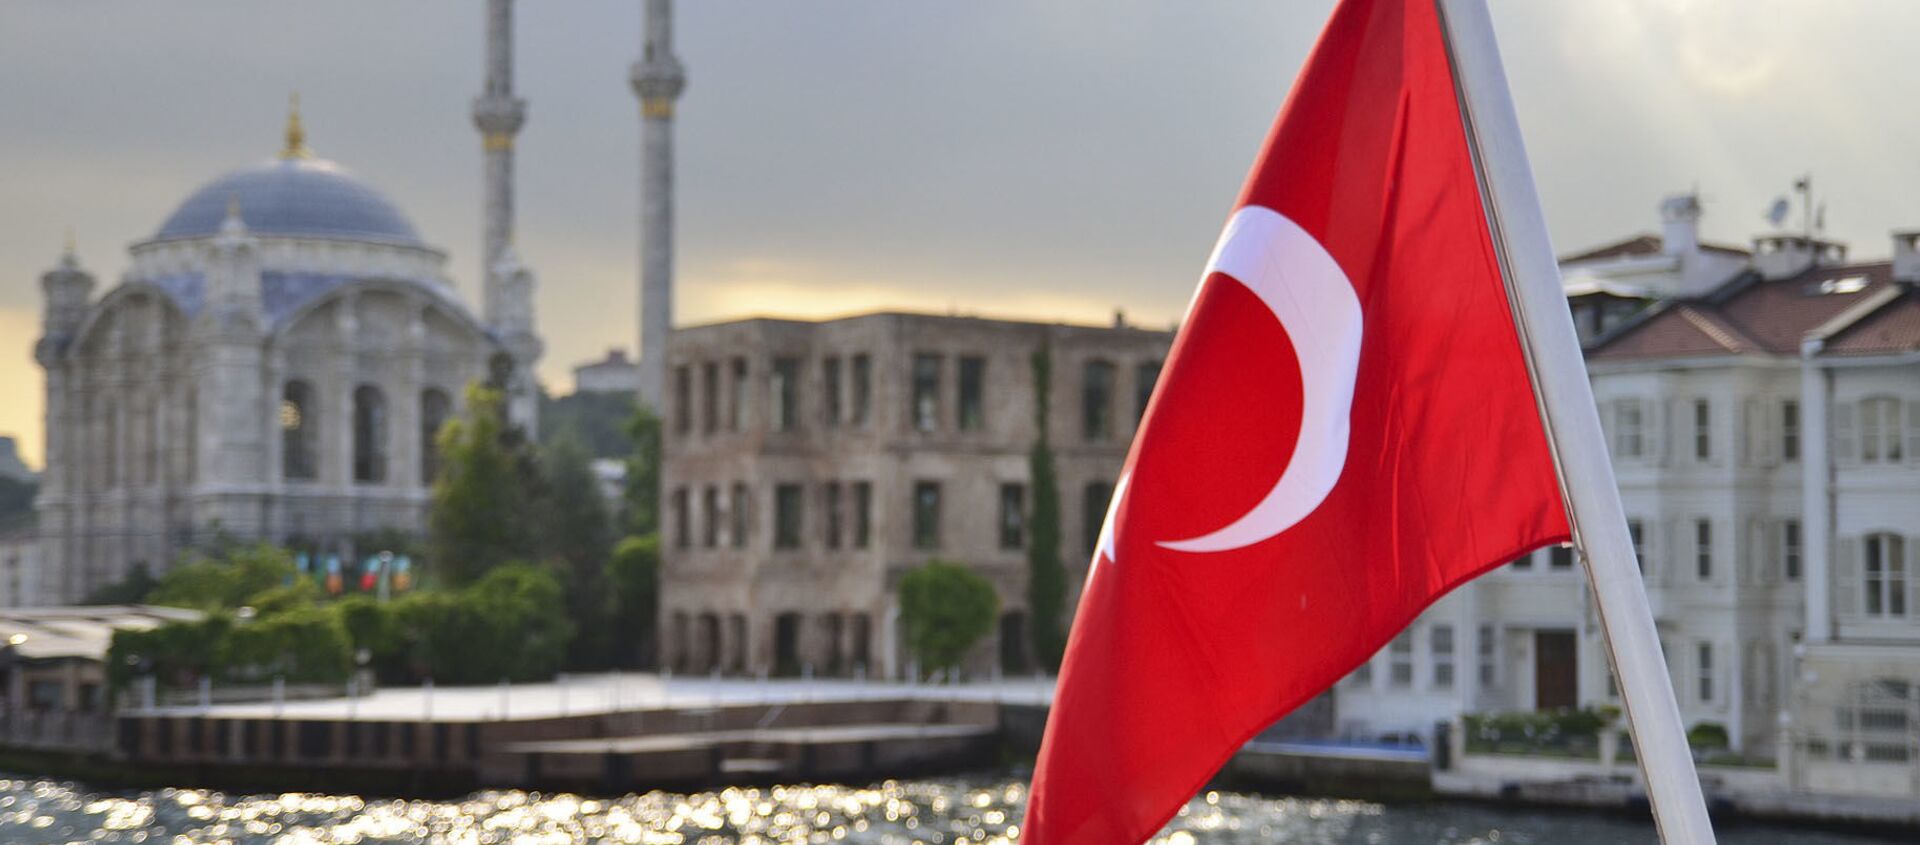 Турецкий флаг на фоне стамбульского пейзажа - Sputnik Абхазия, 1920, 13.04.2021